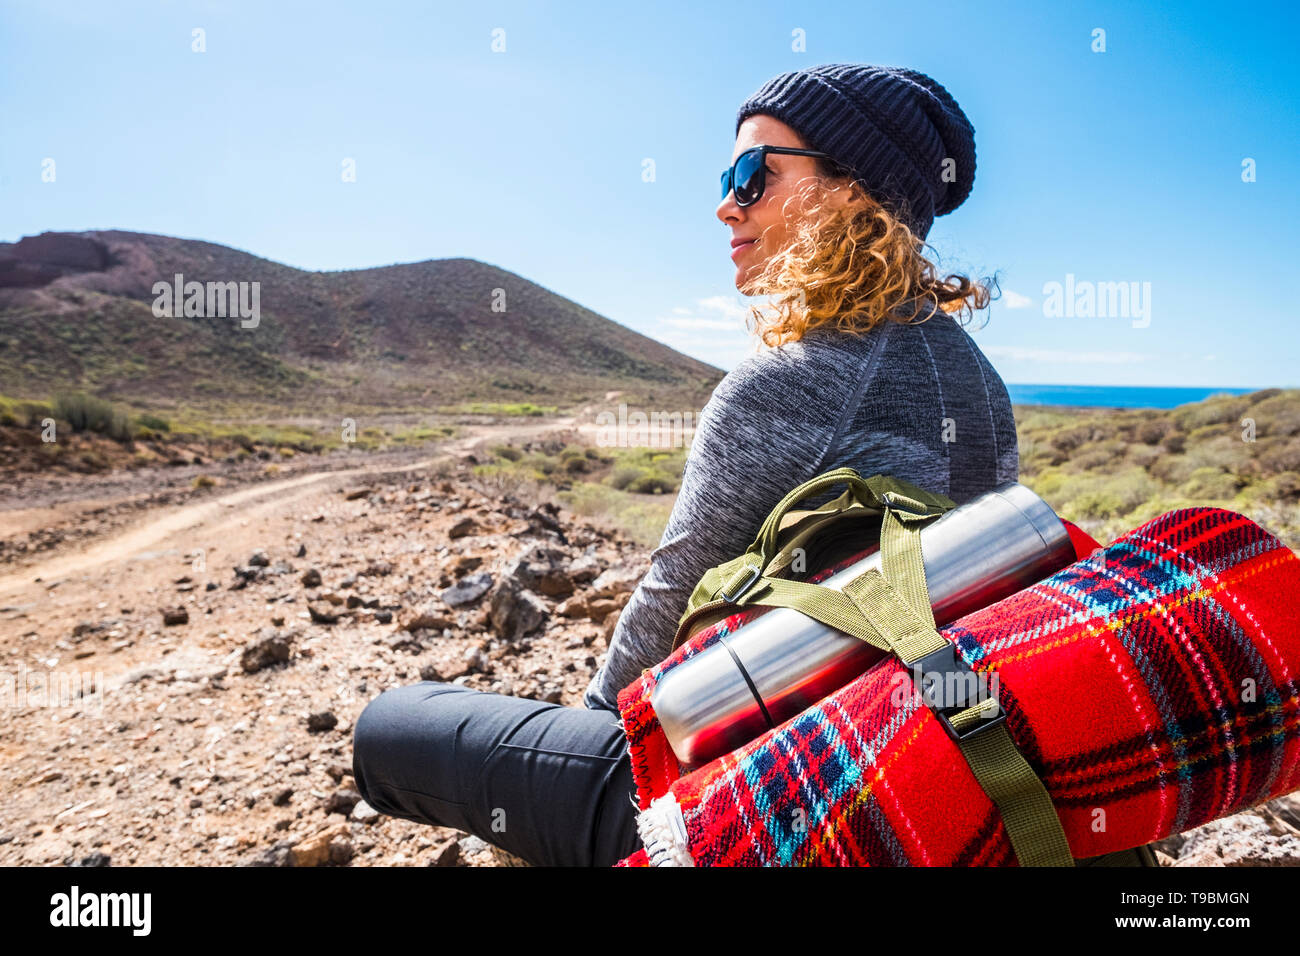 Persone e zaino da trekking avventuroso viaggio attività - donna bionda sedersi e riposare guardando lo splendido paesaggio panoramico con vista del mare e della valle Foto Stock